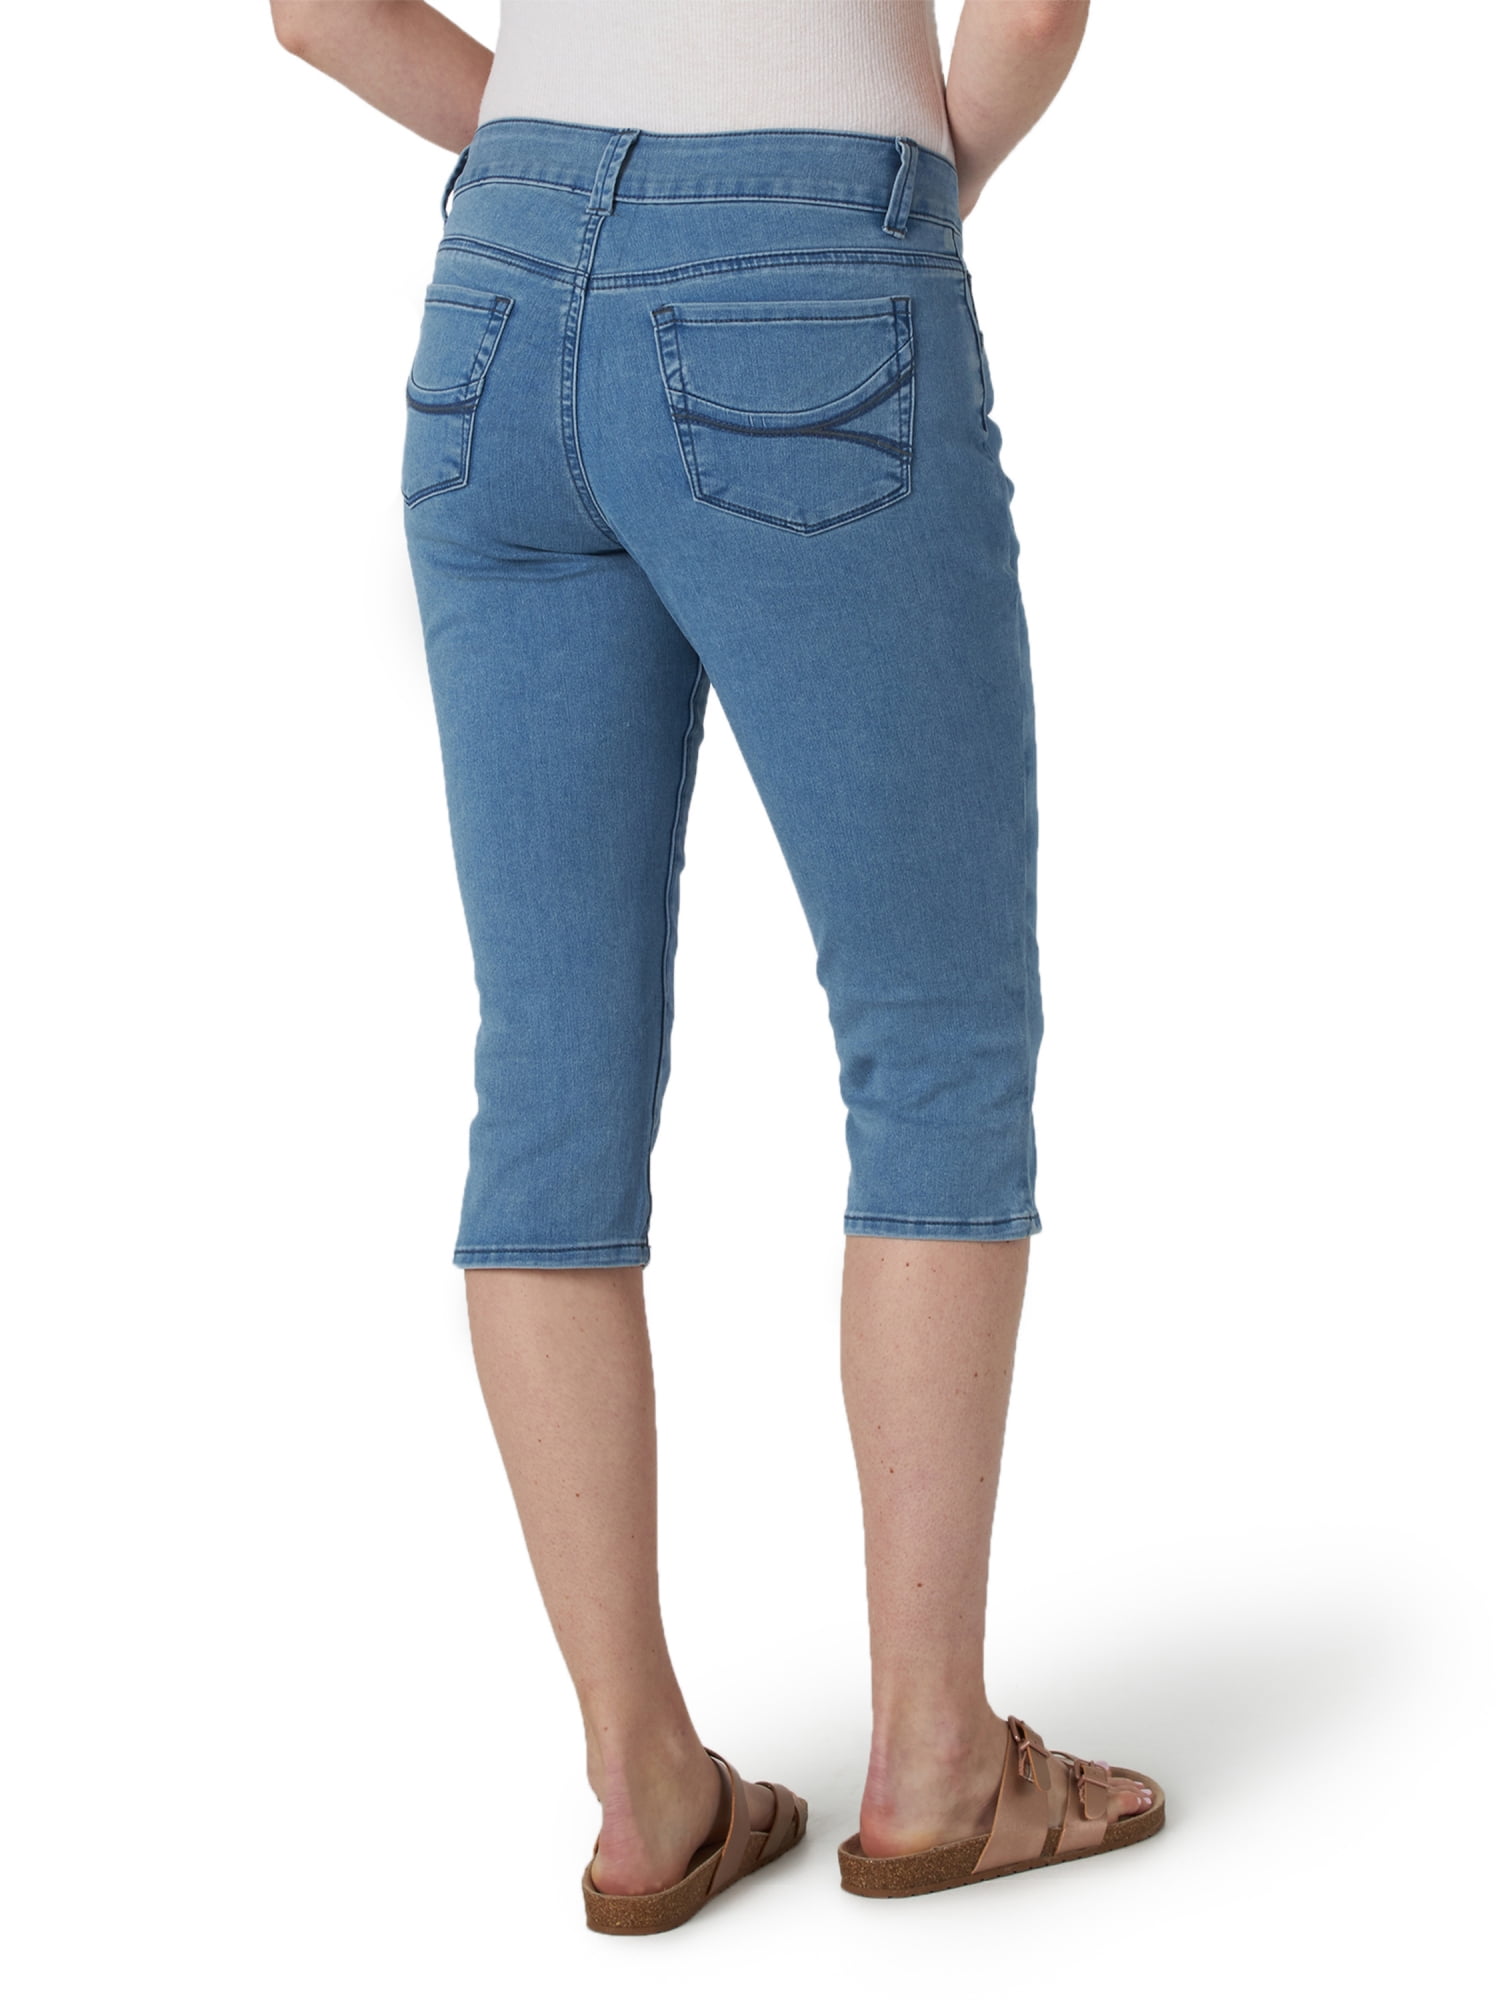 Lee Riders Cutoff Capri Jeans Womens Size 18M Plus Blue Dark Wash 130B709